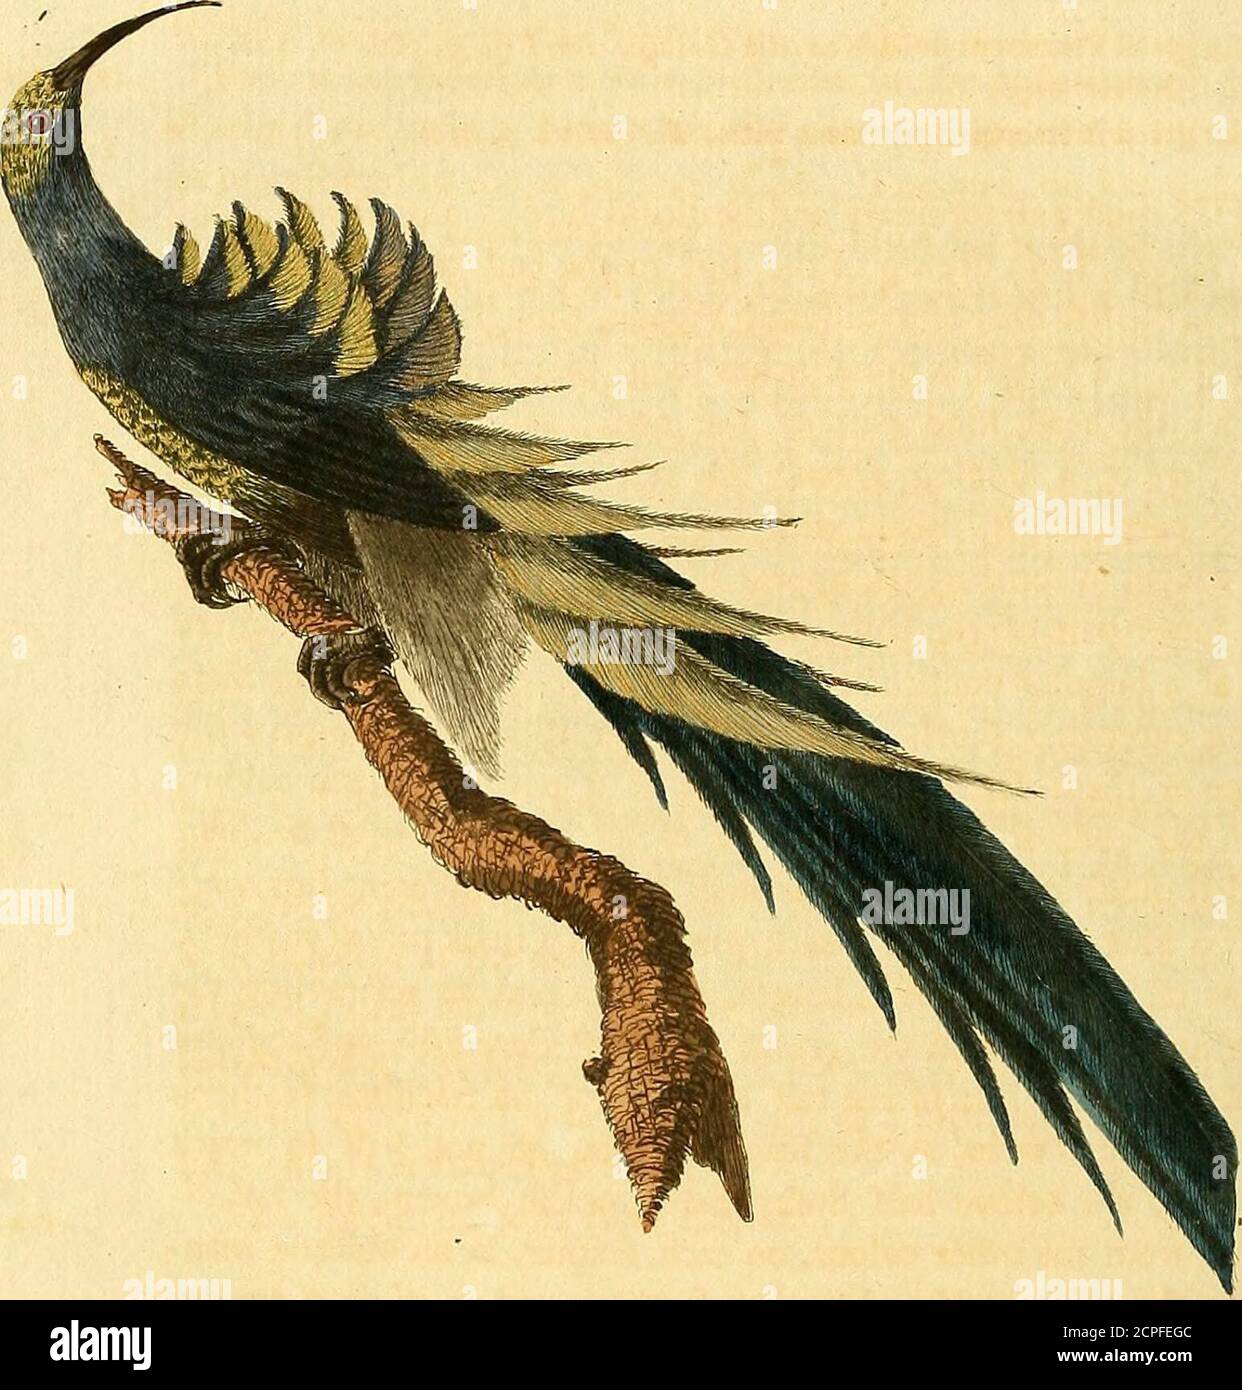 . Un synopsis général des oiseaux . notre : les irides sont noires : le haut de la tête % et les fides, sont de la couleur du fteel po-Jilhed: Le cou et la gorge sont noirs : la partie postérieure du cou, le dos et les ailes, les fcapulaires, et la queue sont brunes: les trois pieds sont tappés de vert brownifh, et la couleur des trois pieds de paler, à l'exception de la plume de queue extérieure, qui est noire sur.la toile intérieure sur toute la longueur : le pain et sous les parties du corps sont transfverfely ftriped avec noir et blanc, chaque plume ayant deux barres noires et deux barres blanches sur elle, avec la bavette gris: les ailes, quand clofed, atteignent fo Banque D'Images